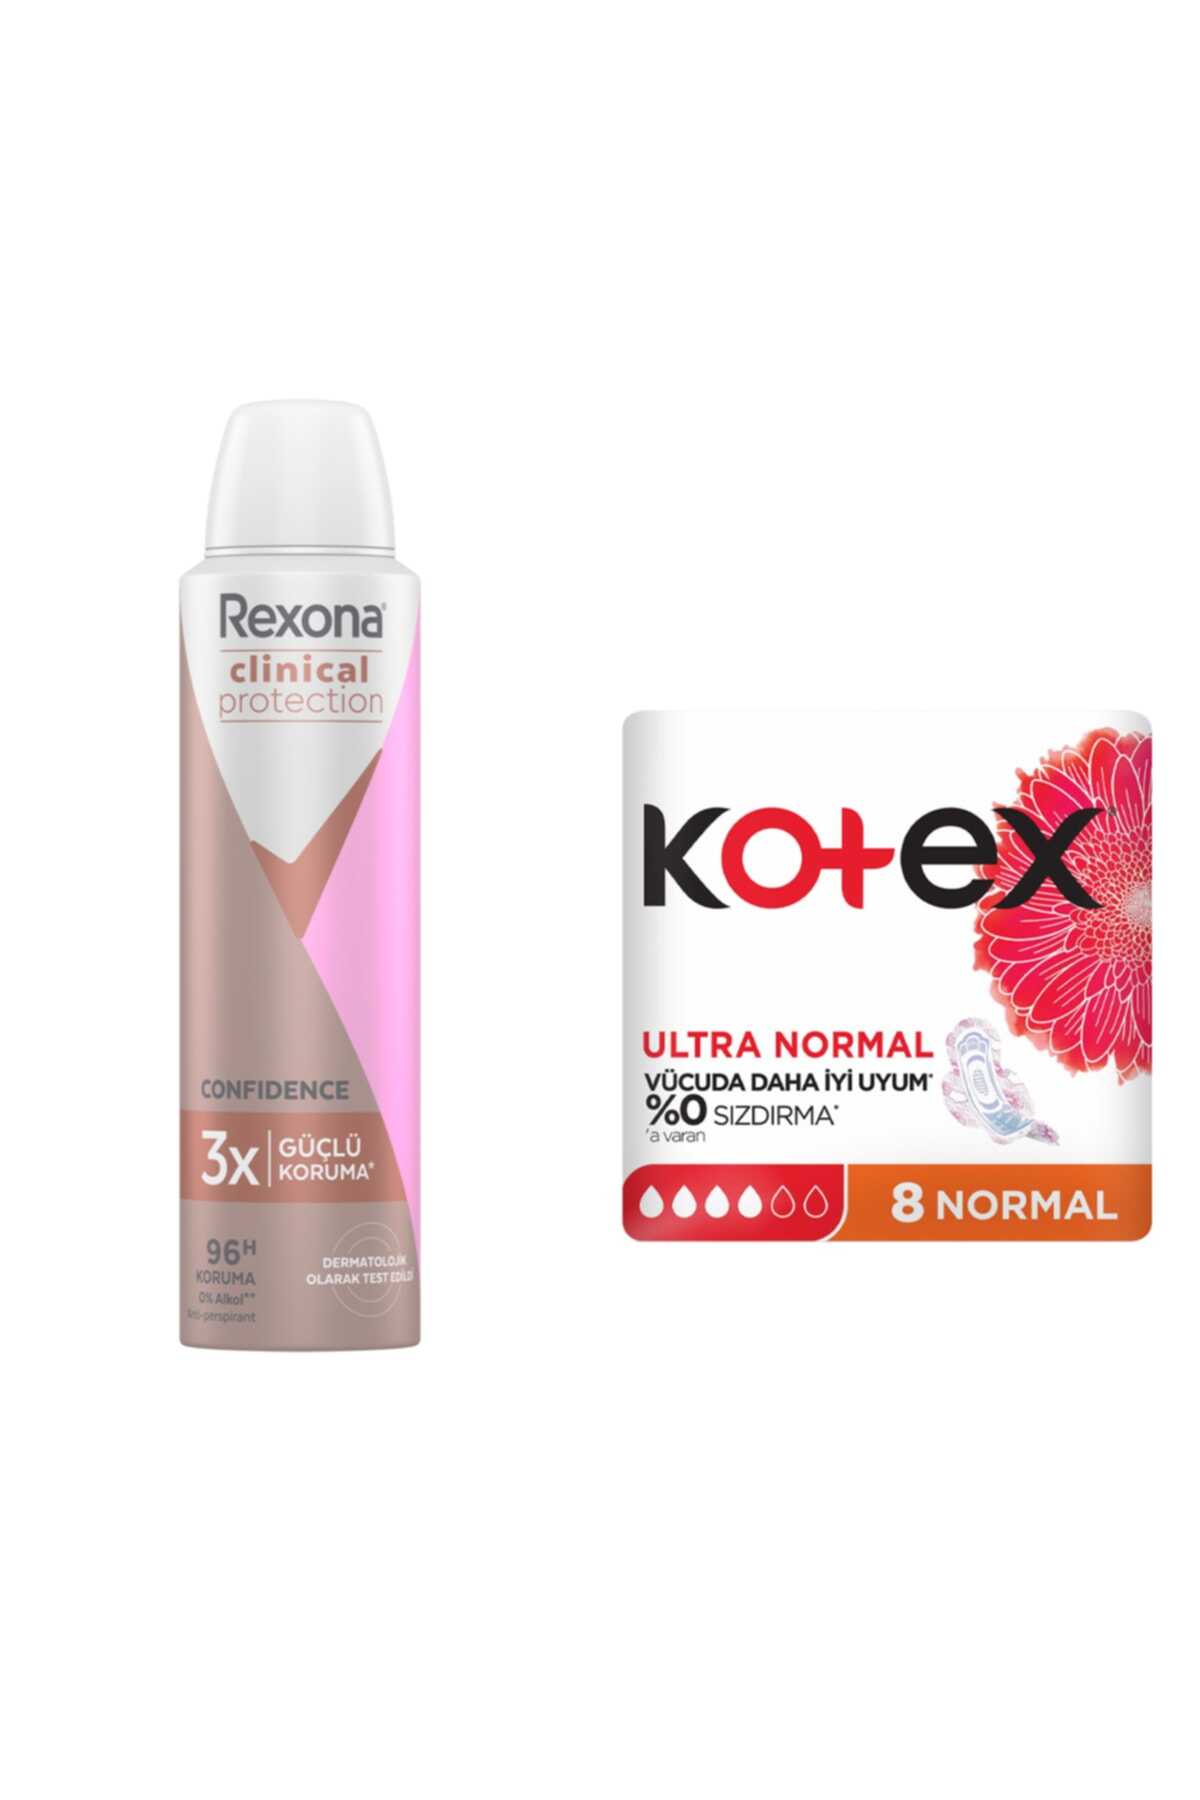  پک 2 عددی اسپری دئودورانت ضد تعریق زنانه برند Rexona  _ بسته نوار بهداشتی Ultra Normal برند Kotex 